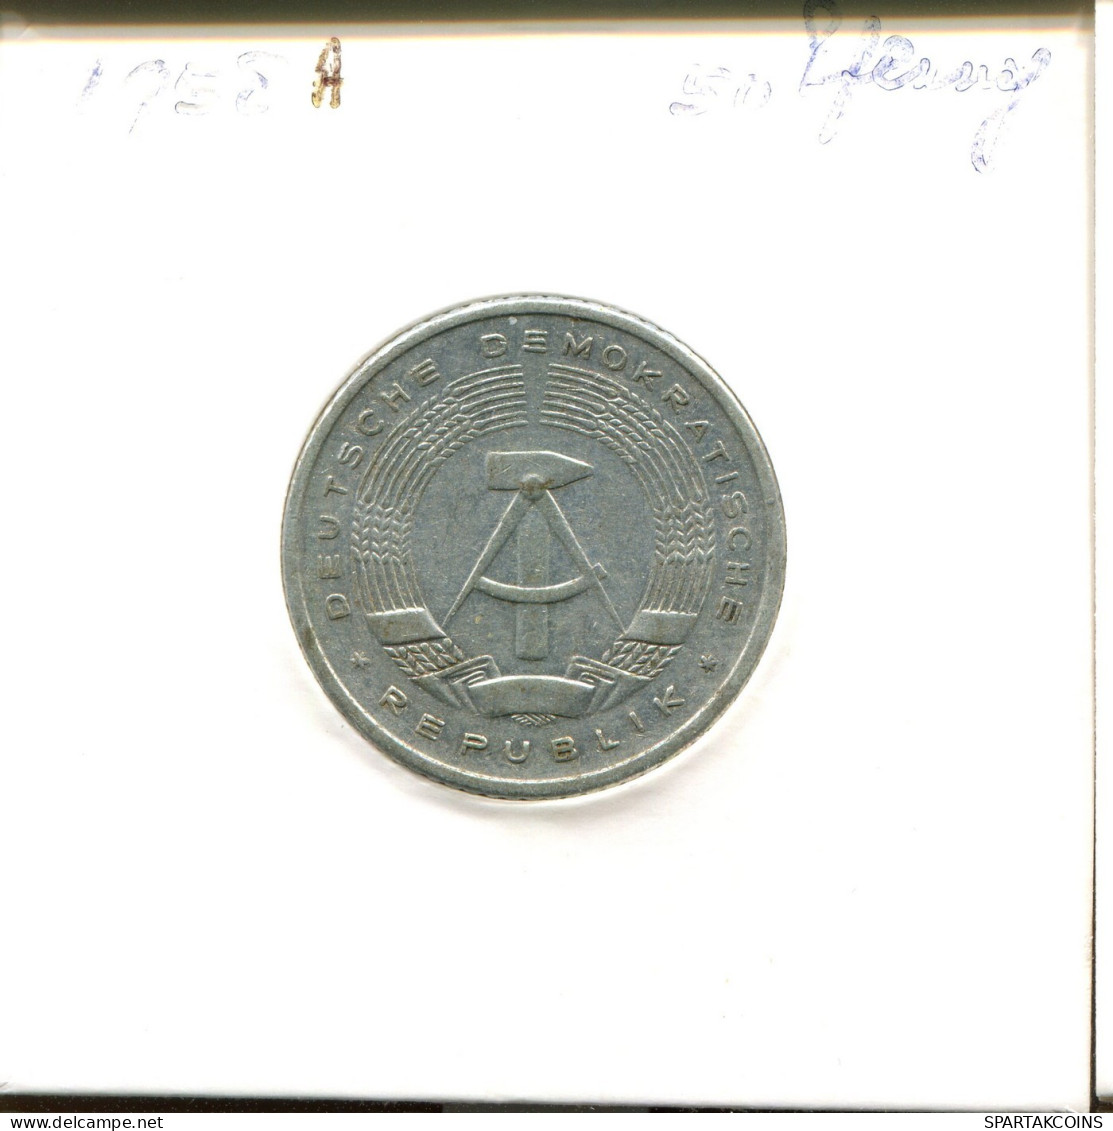 50 PFENNIG 1958 A DDR EAST GERMANY Coin #DB111.U.A - 50 Pfennig